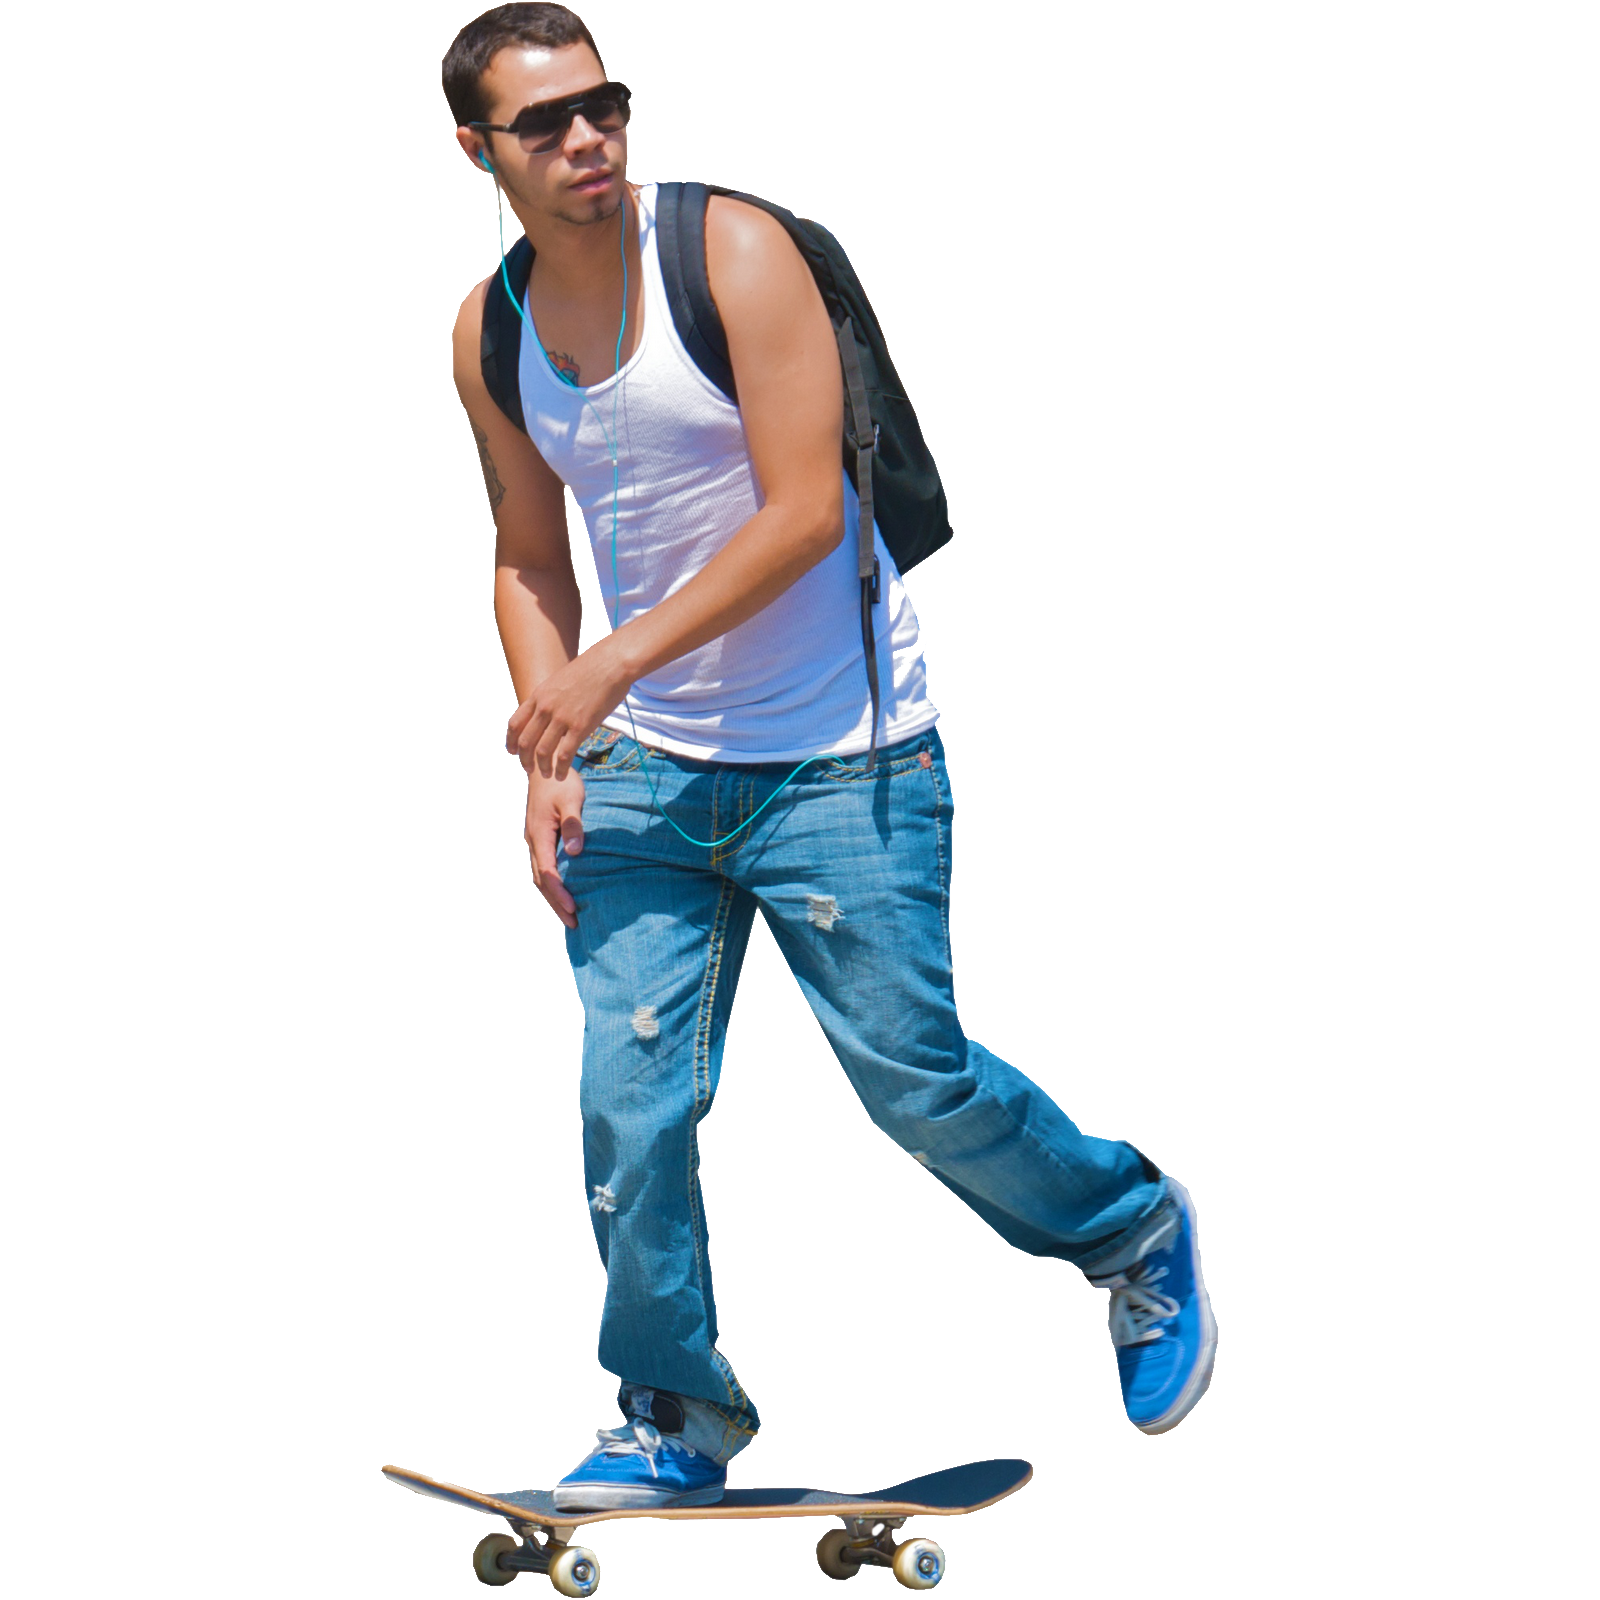 Download PNG image - Skateboard PNG Image 